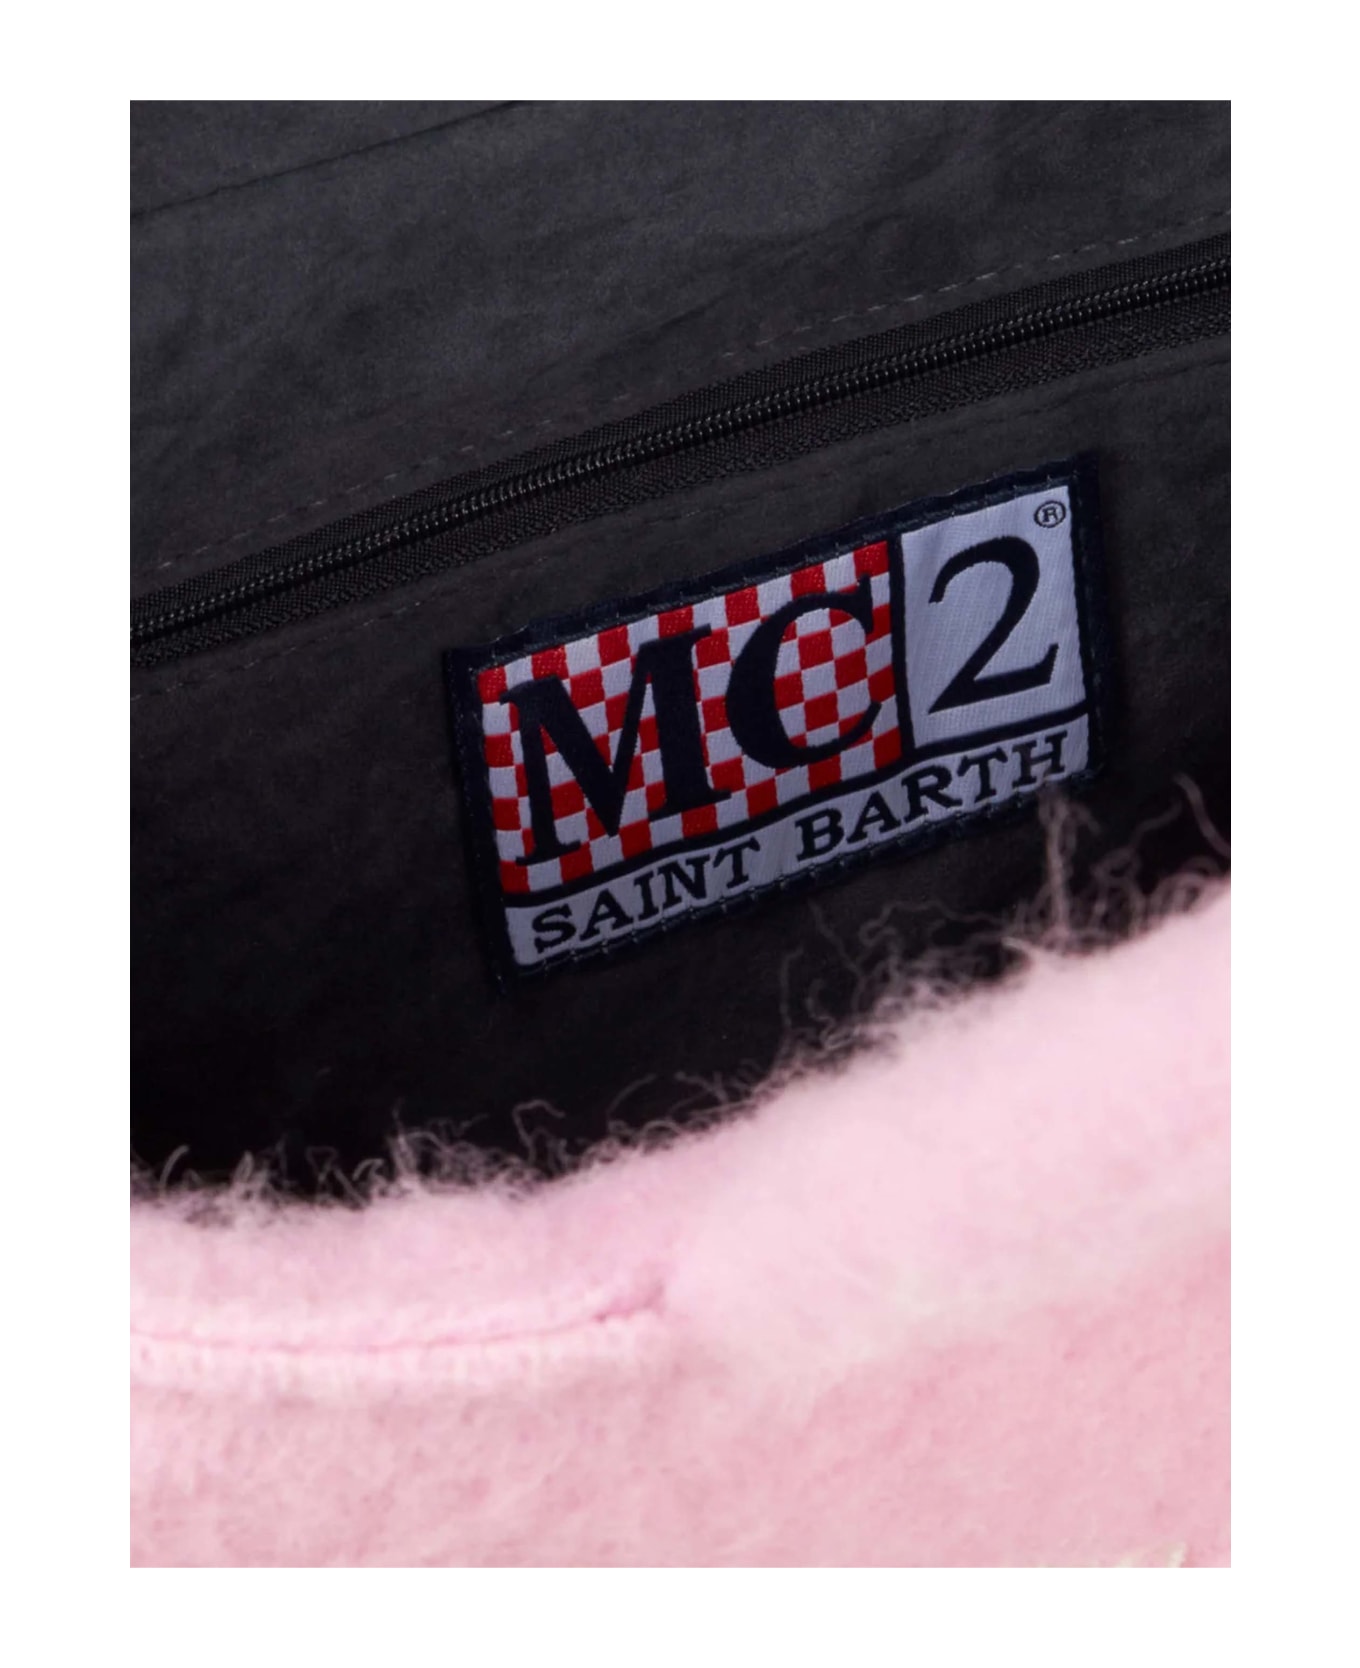 MC2 Saint Barth Colette Blanket Pink Handbag - PINK トートバッグ